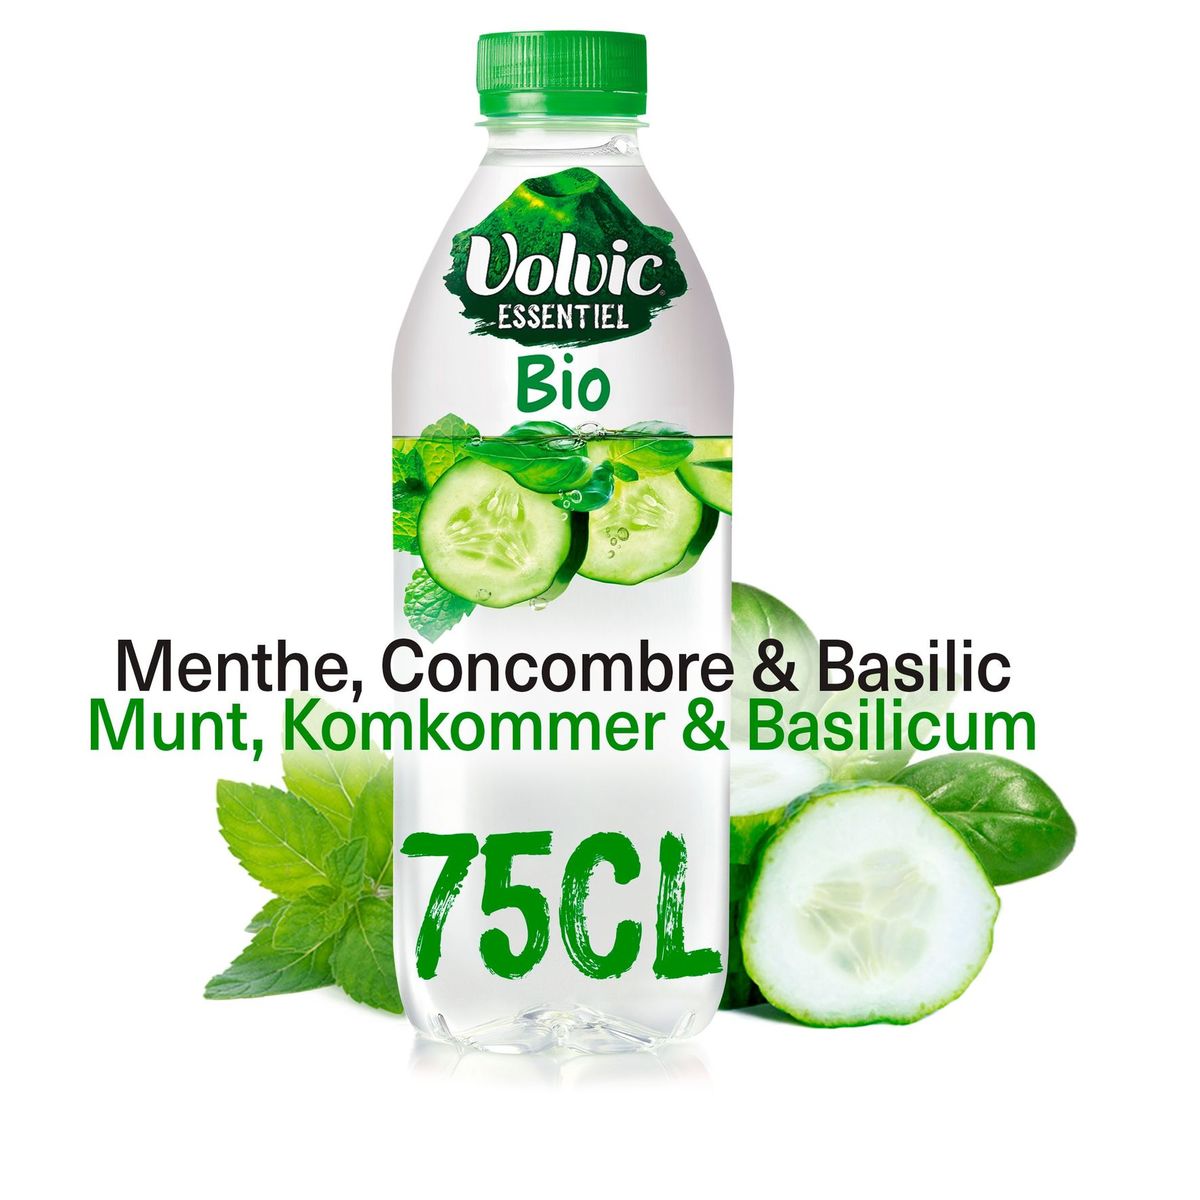 VOLVIC Essentiel Bio Munt Komkommer Basilicum 75cl